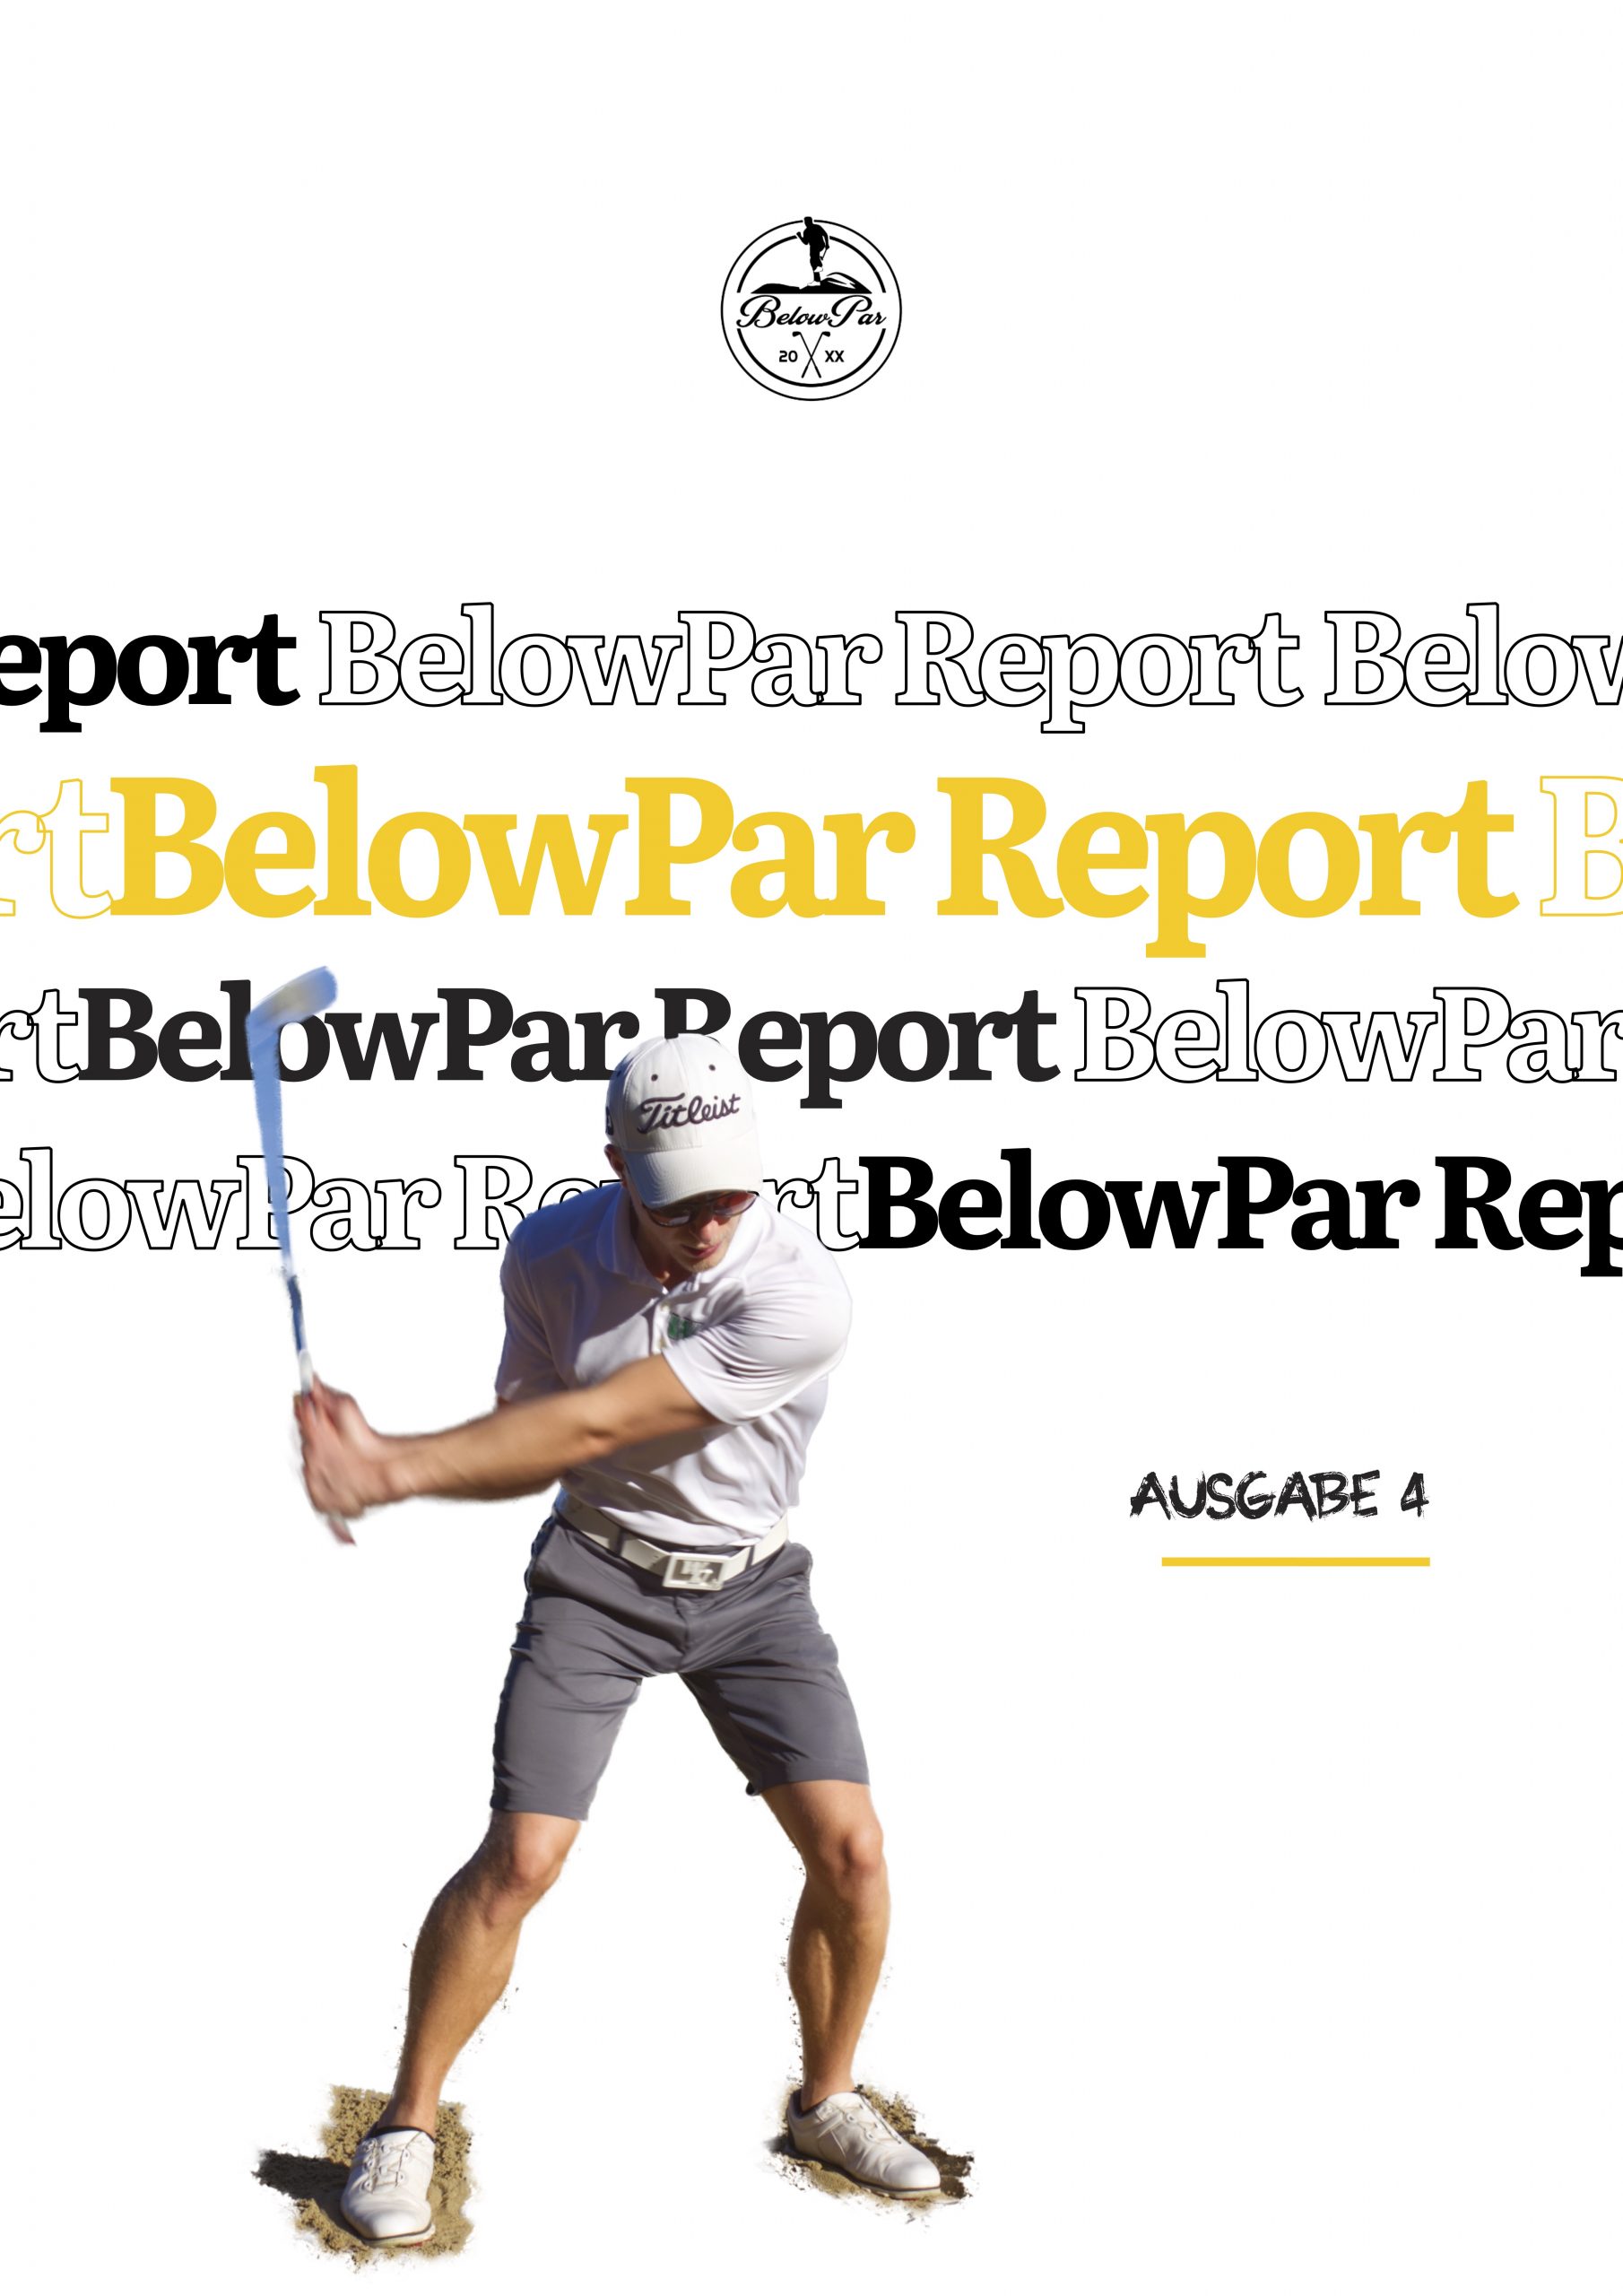 BelowPar Report